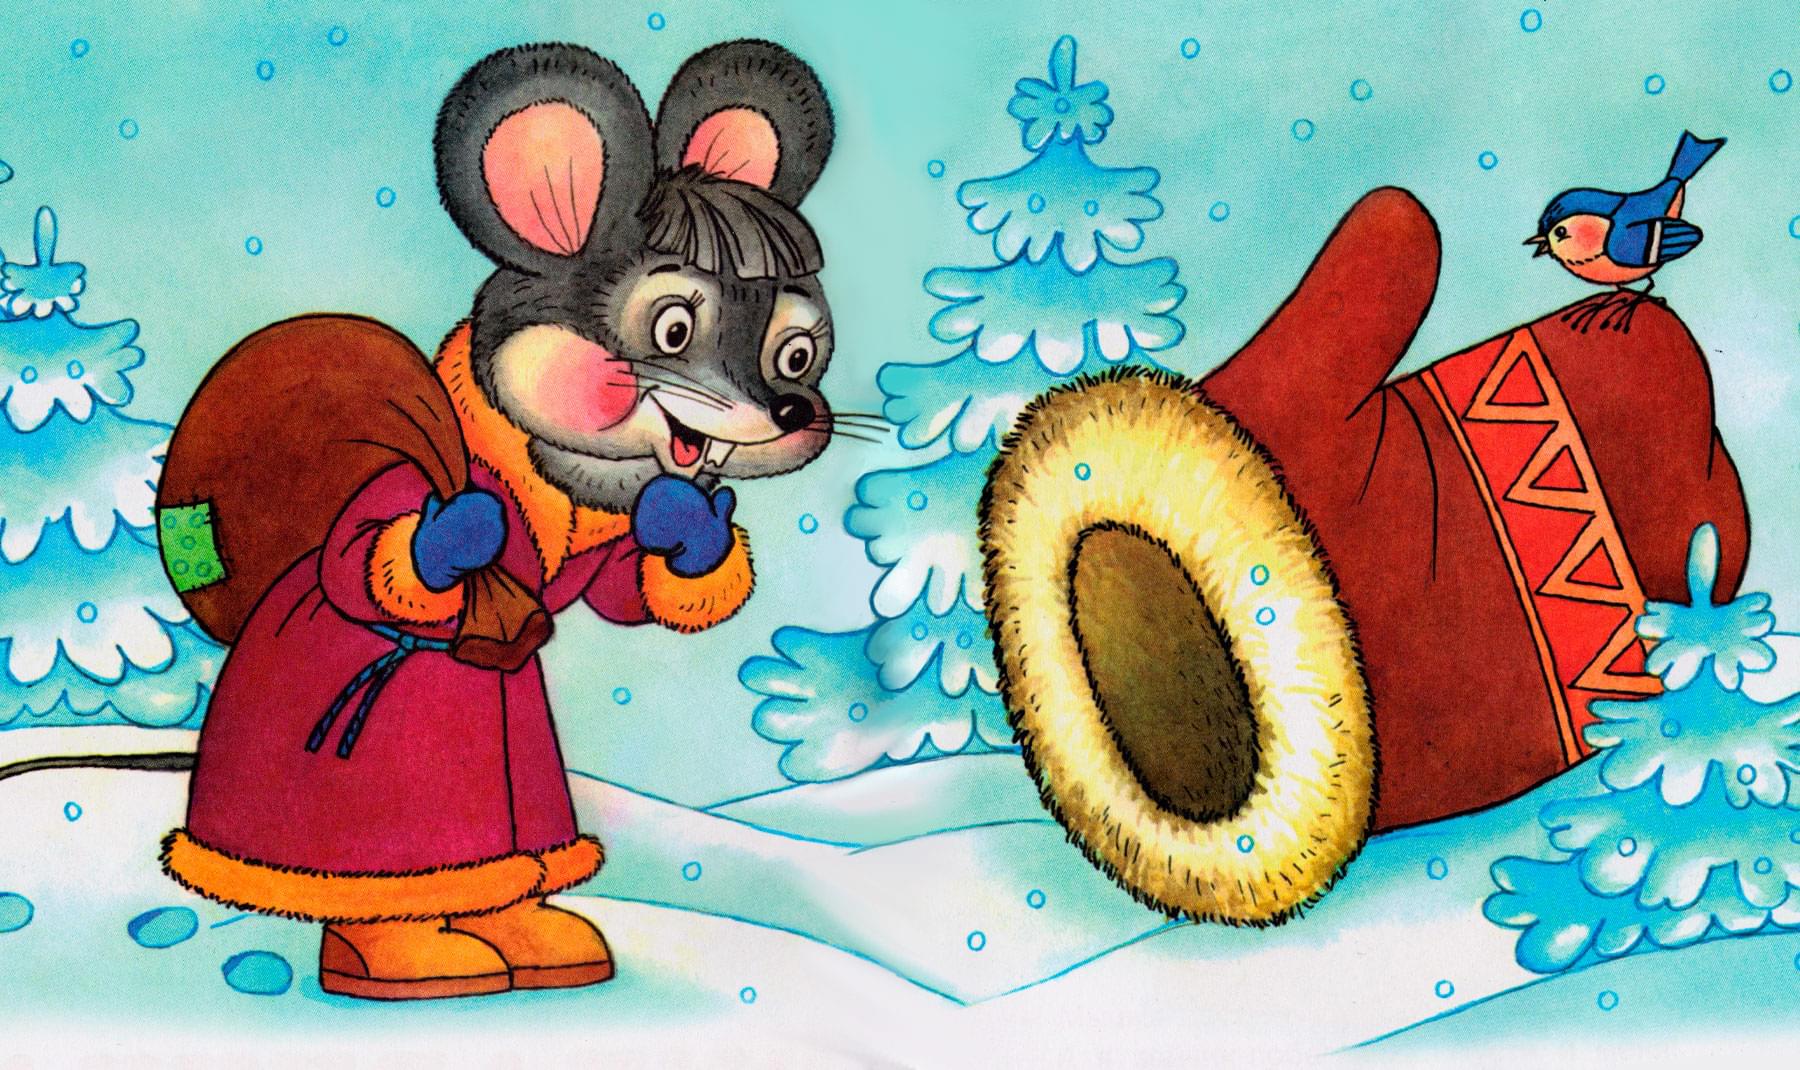 Мышка нашла рукавичку